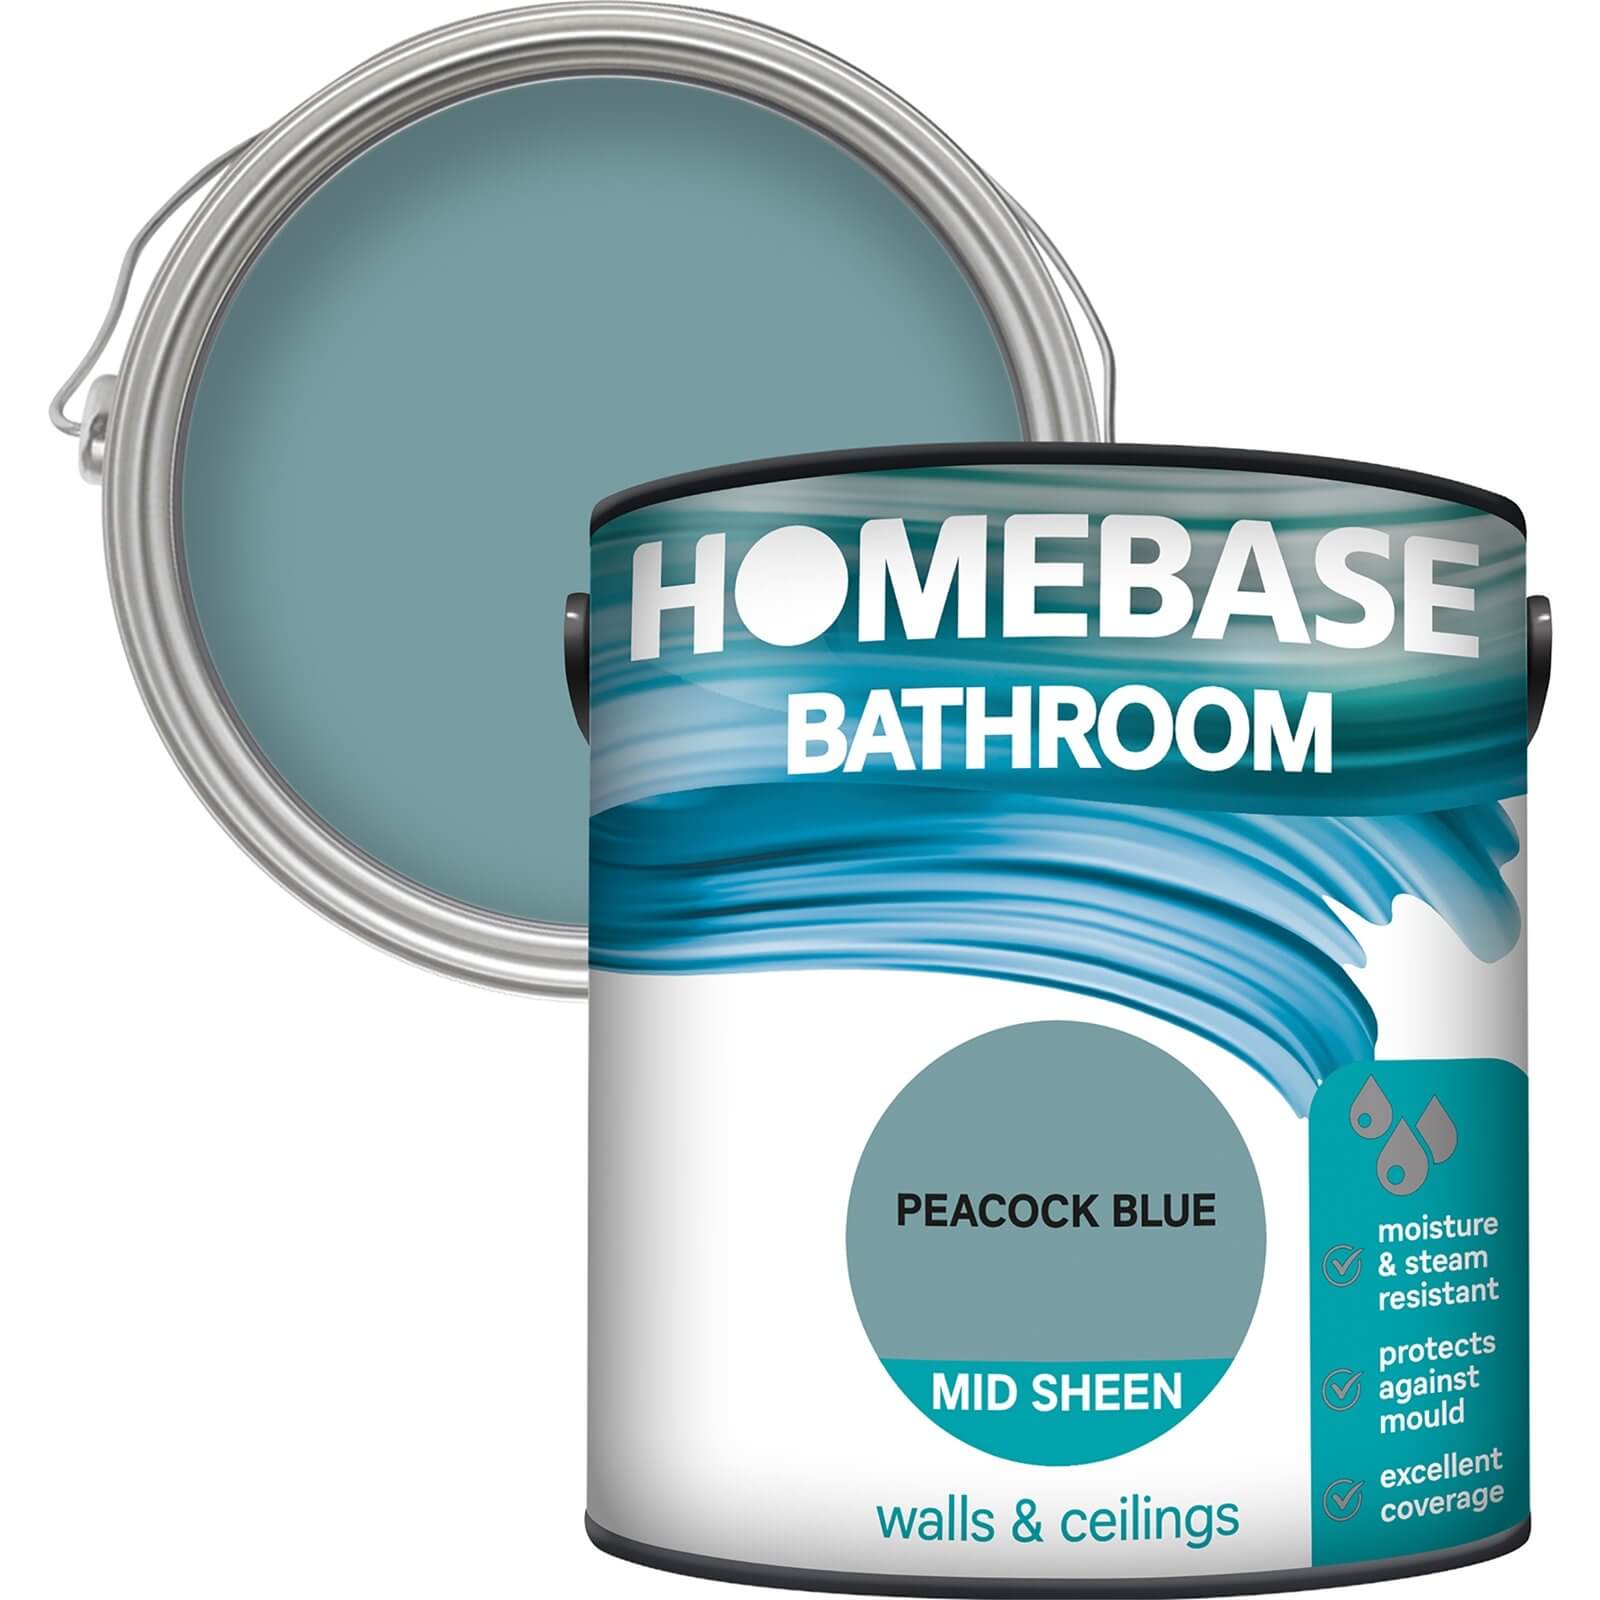 Homebase Bathroom Mid Sheen Paint - Peacock Blue 2.5L